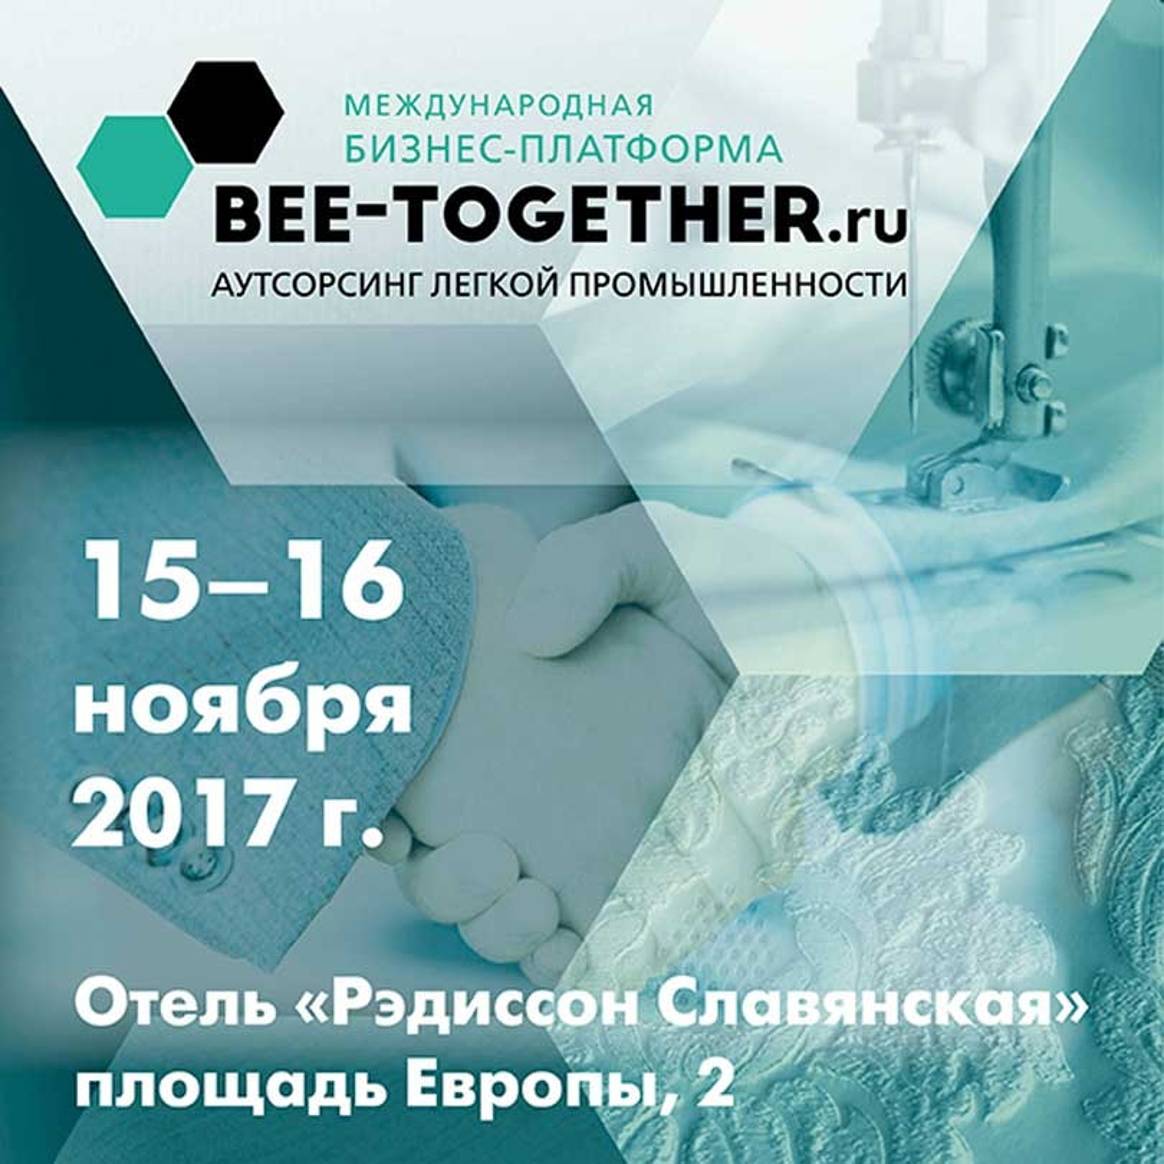 15-16 ноября пройдет 4-я Международная бизнес-платформа по аутсорсингу для текстильной промышленности Bee-Together.ru